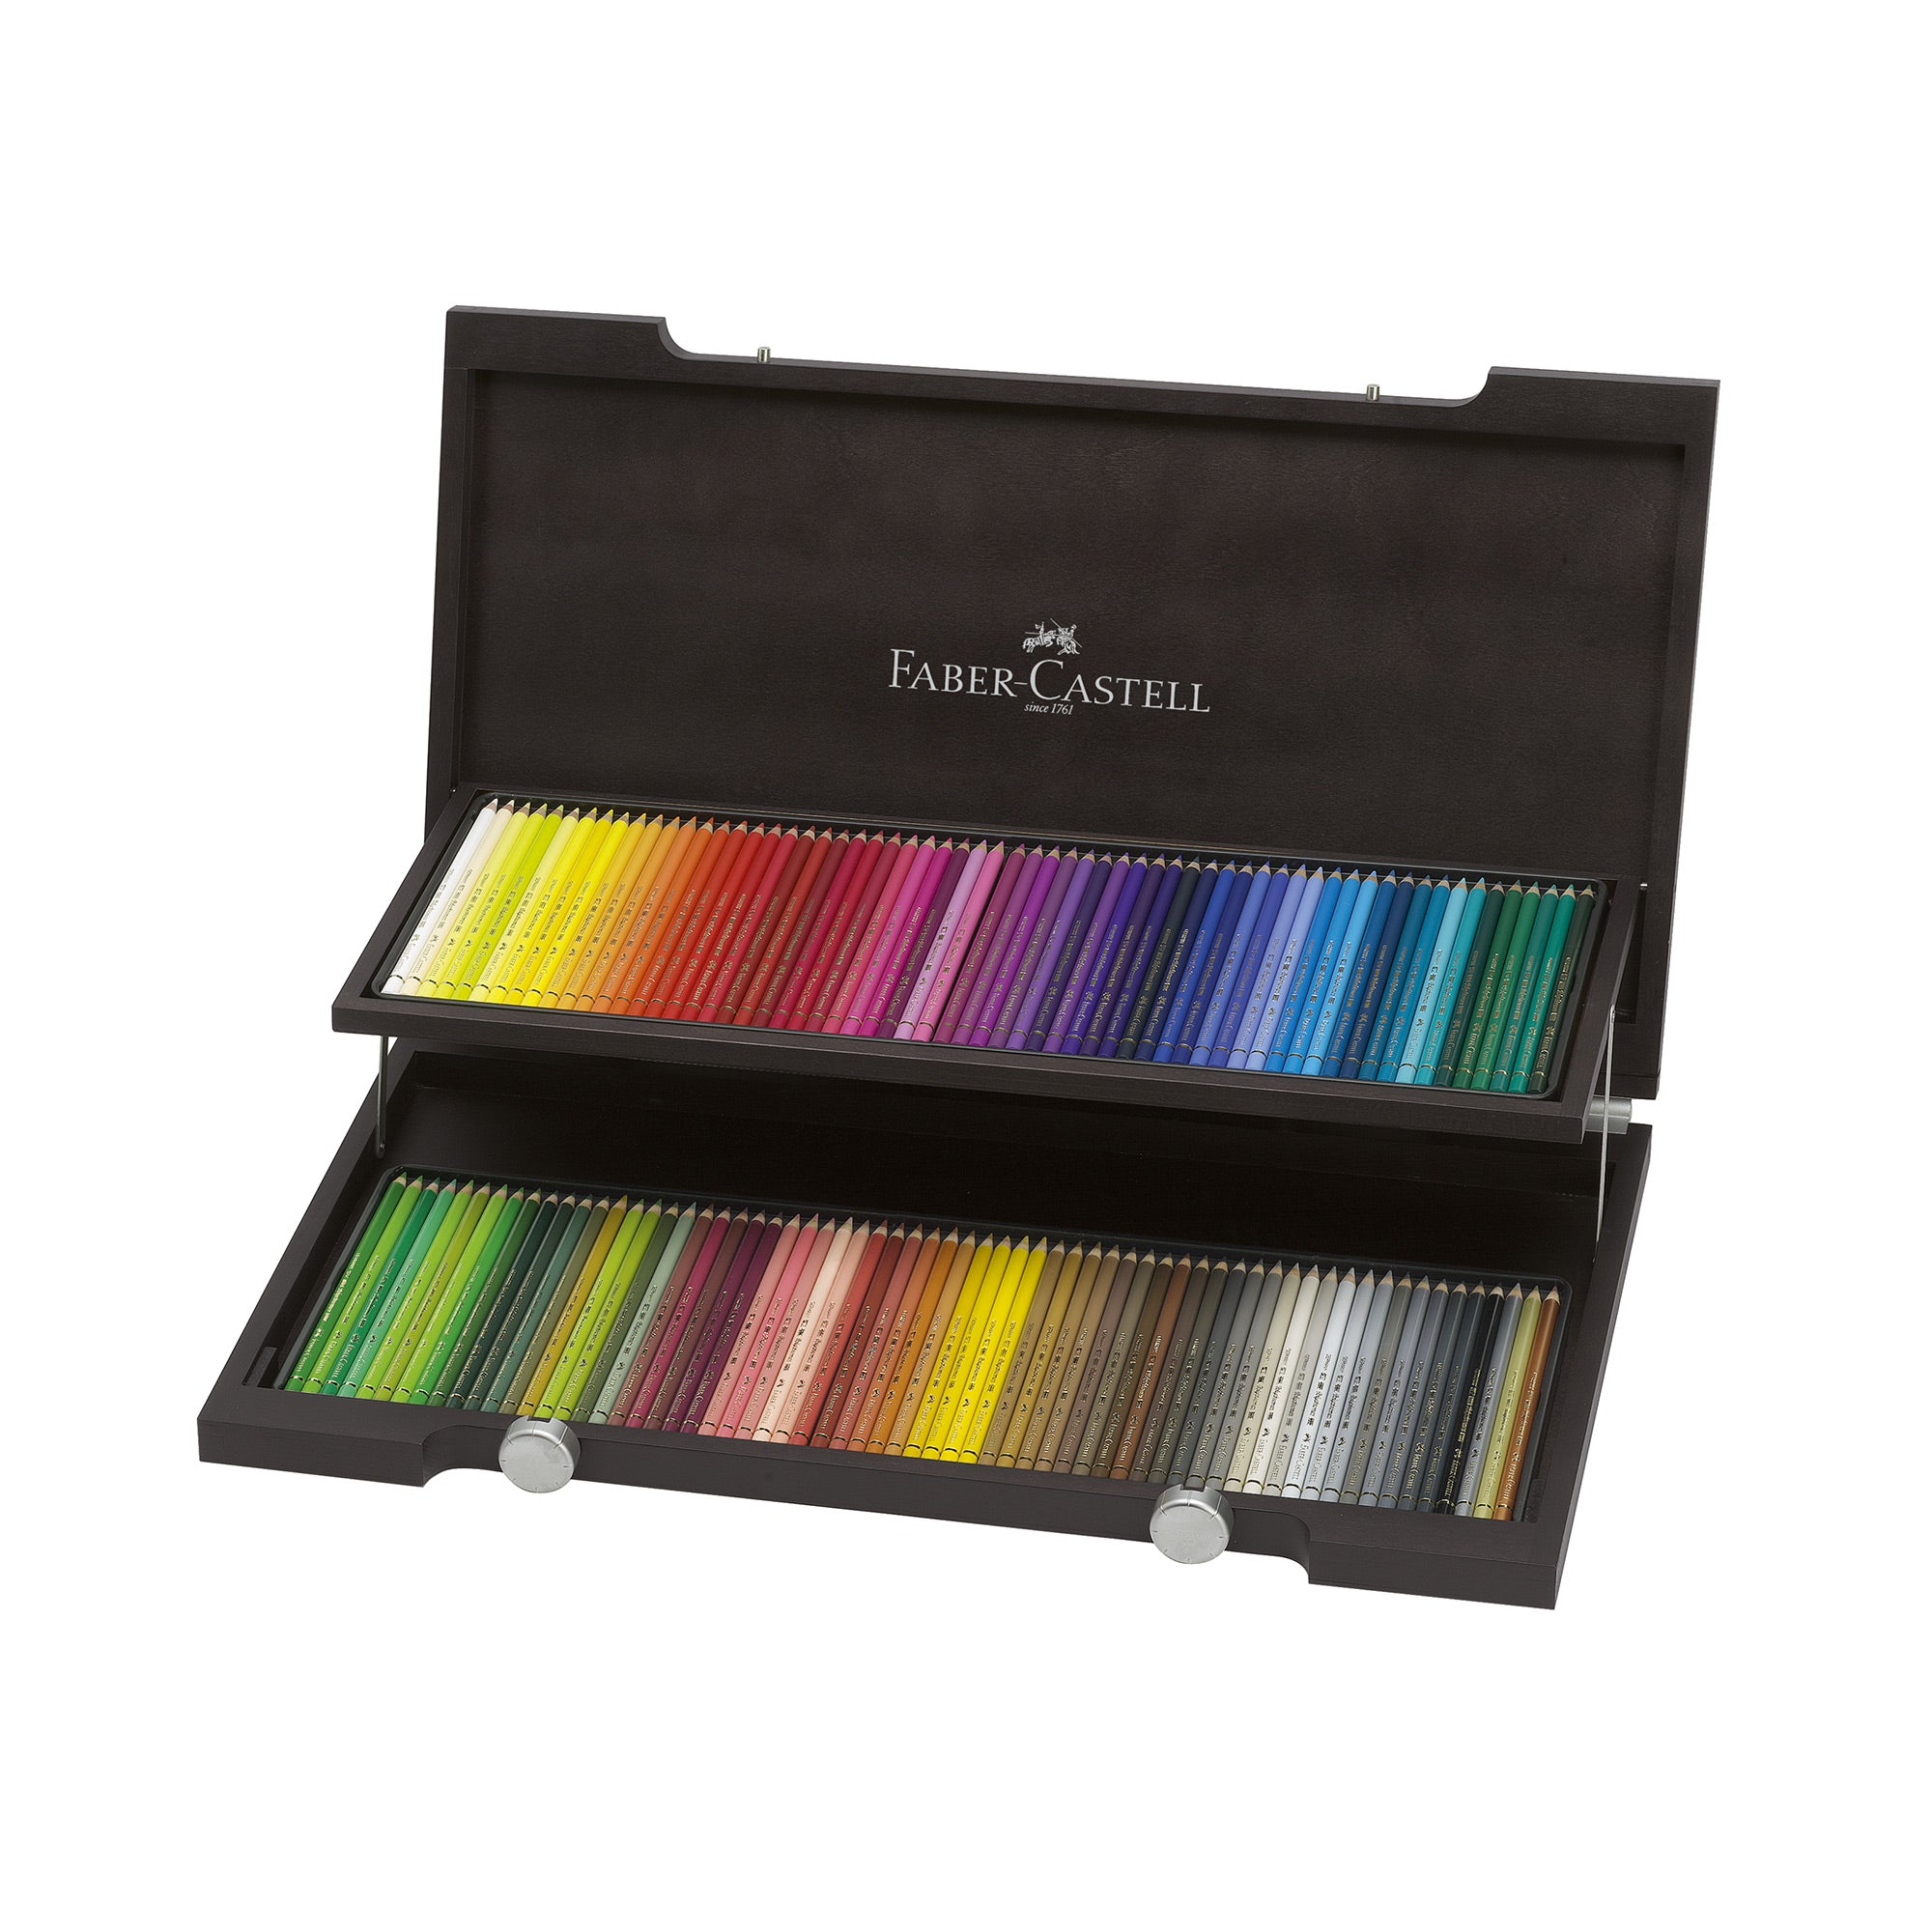 Coffret Crayons de Couleur - Winsor & Newton Studio Collection - 50 Pièces